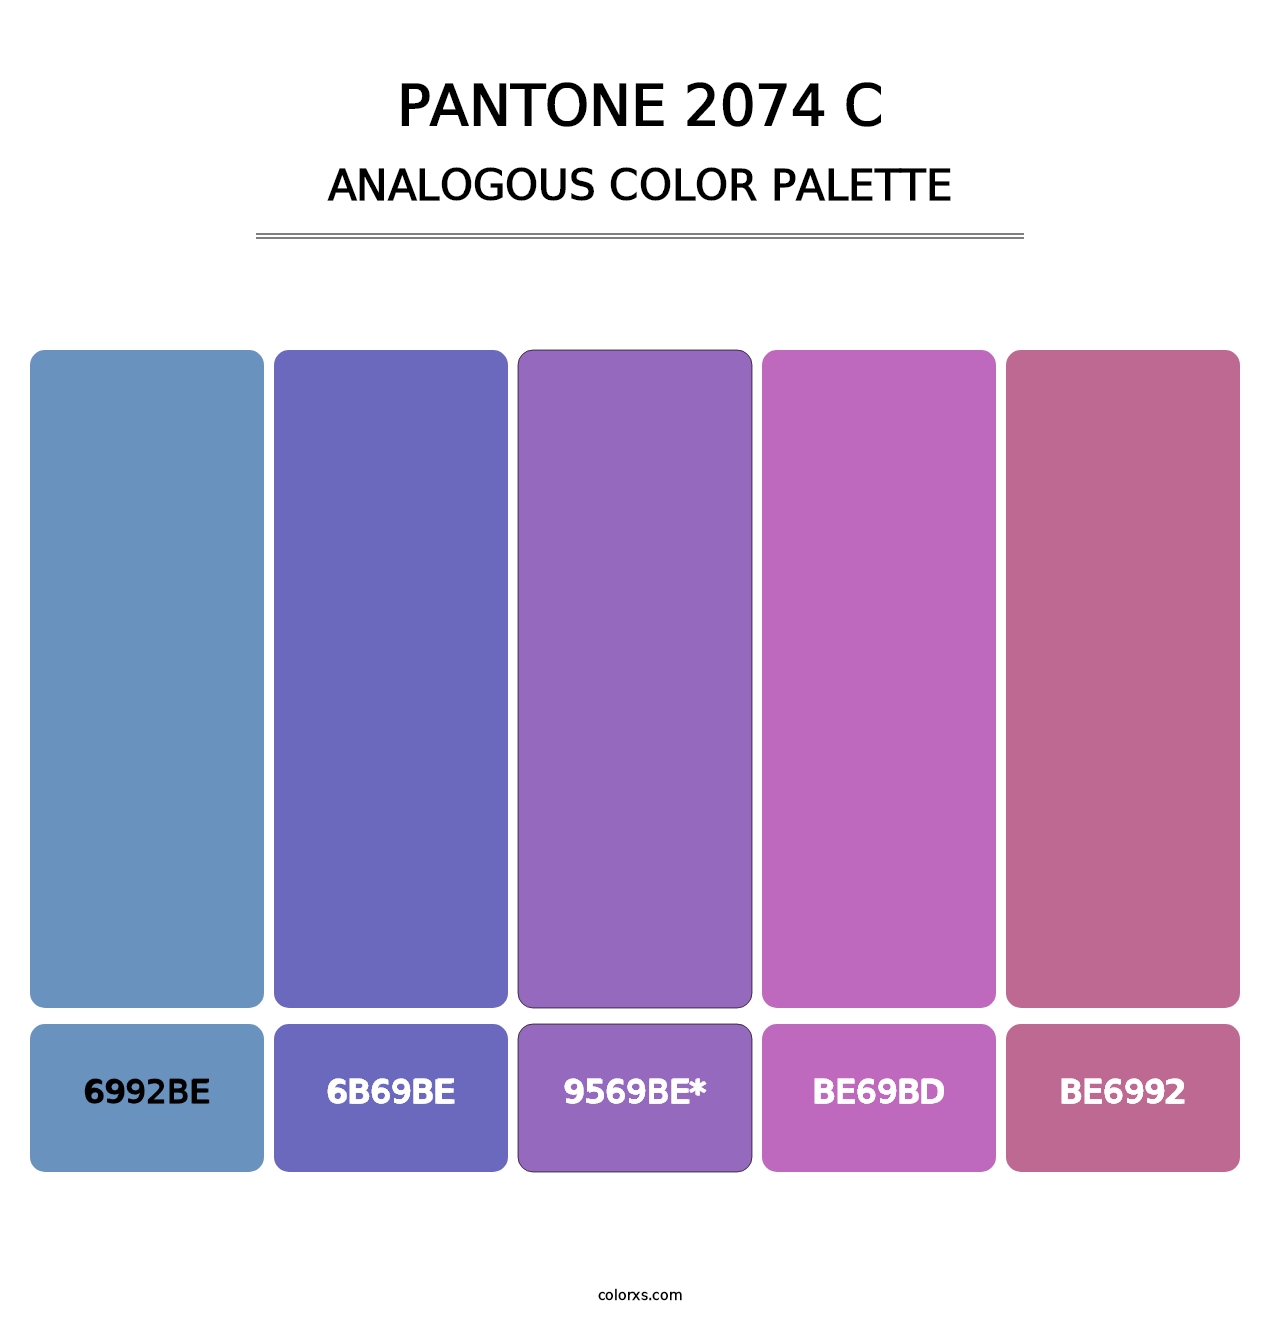 PANTONE 2074 C - Analogous Color Palette